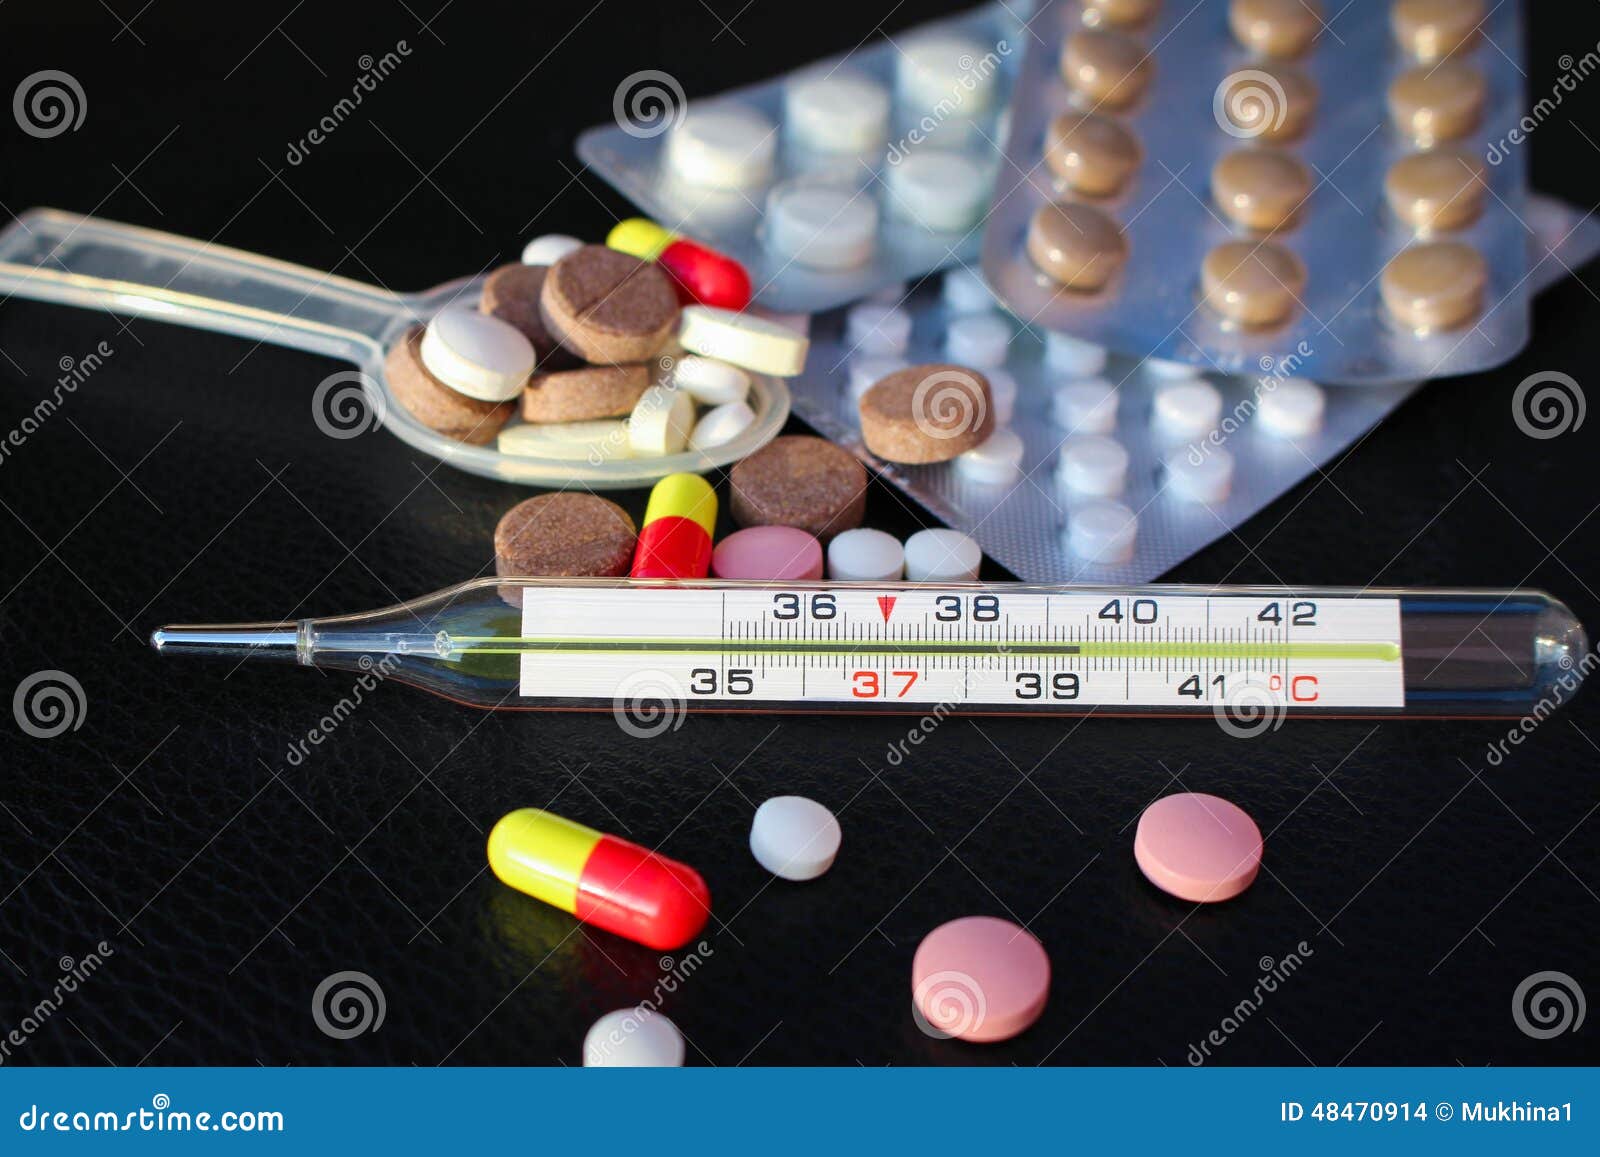 Лекарство температура 39. Фотография градусника на фоне лекарств. Температура таблетки. Градусник с температурой 39 с таблетками. Выходные с лекарствами.